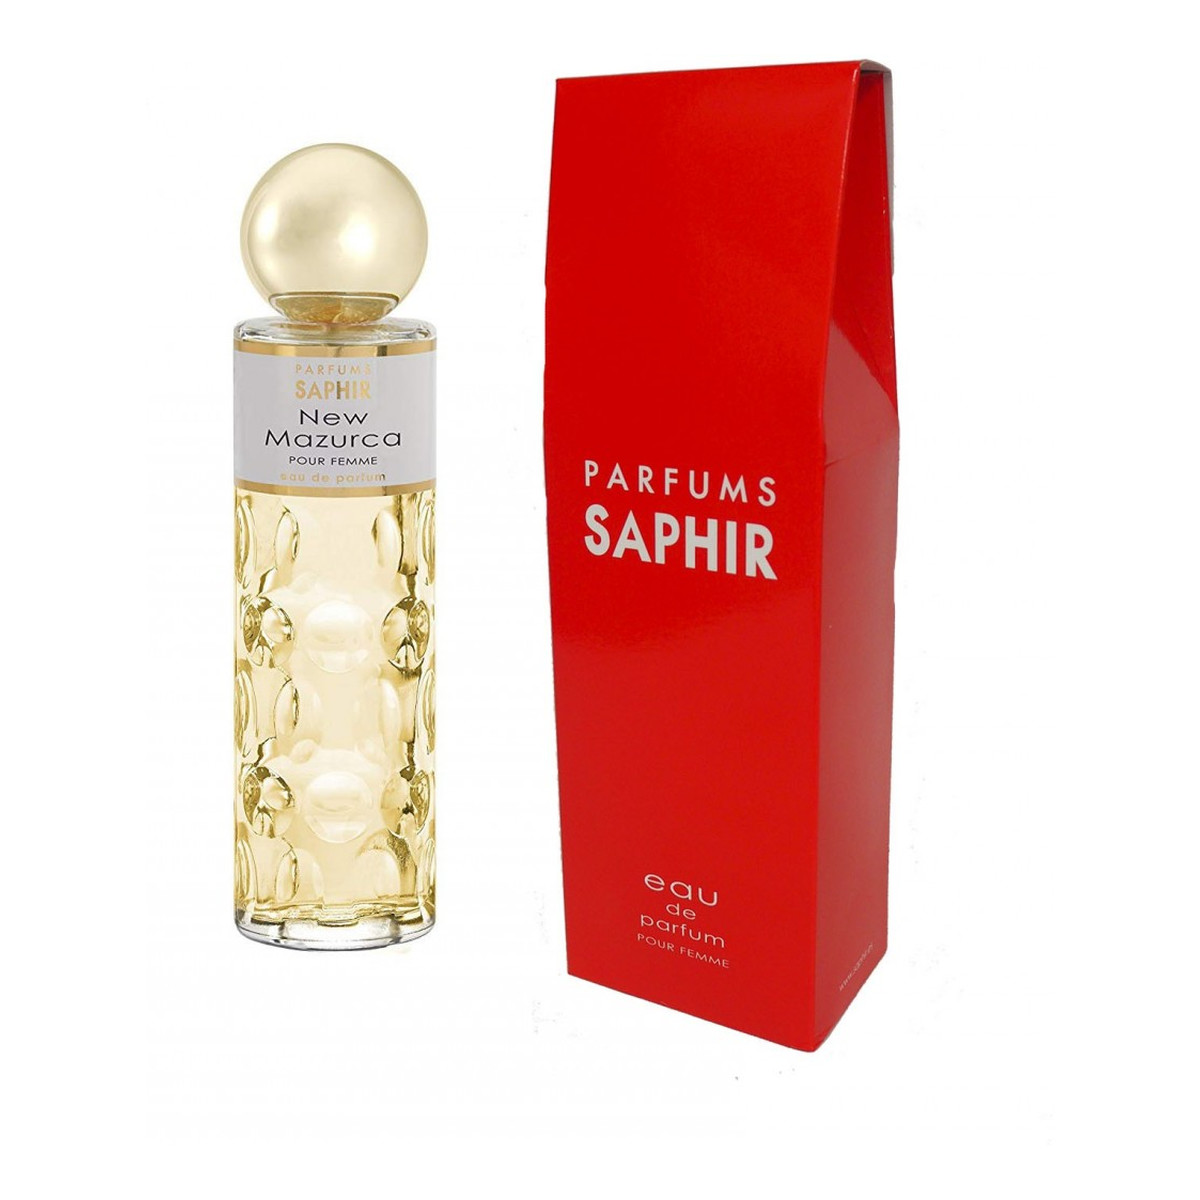 Saphir New Mazurca Woda perfumowana 200ml